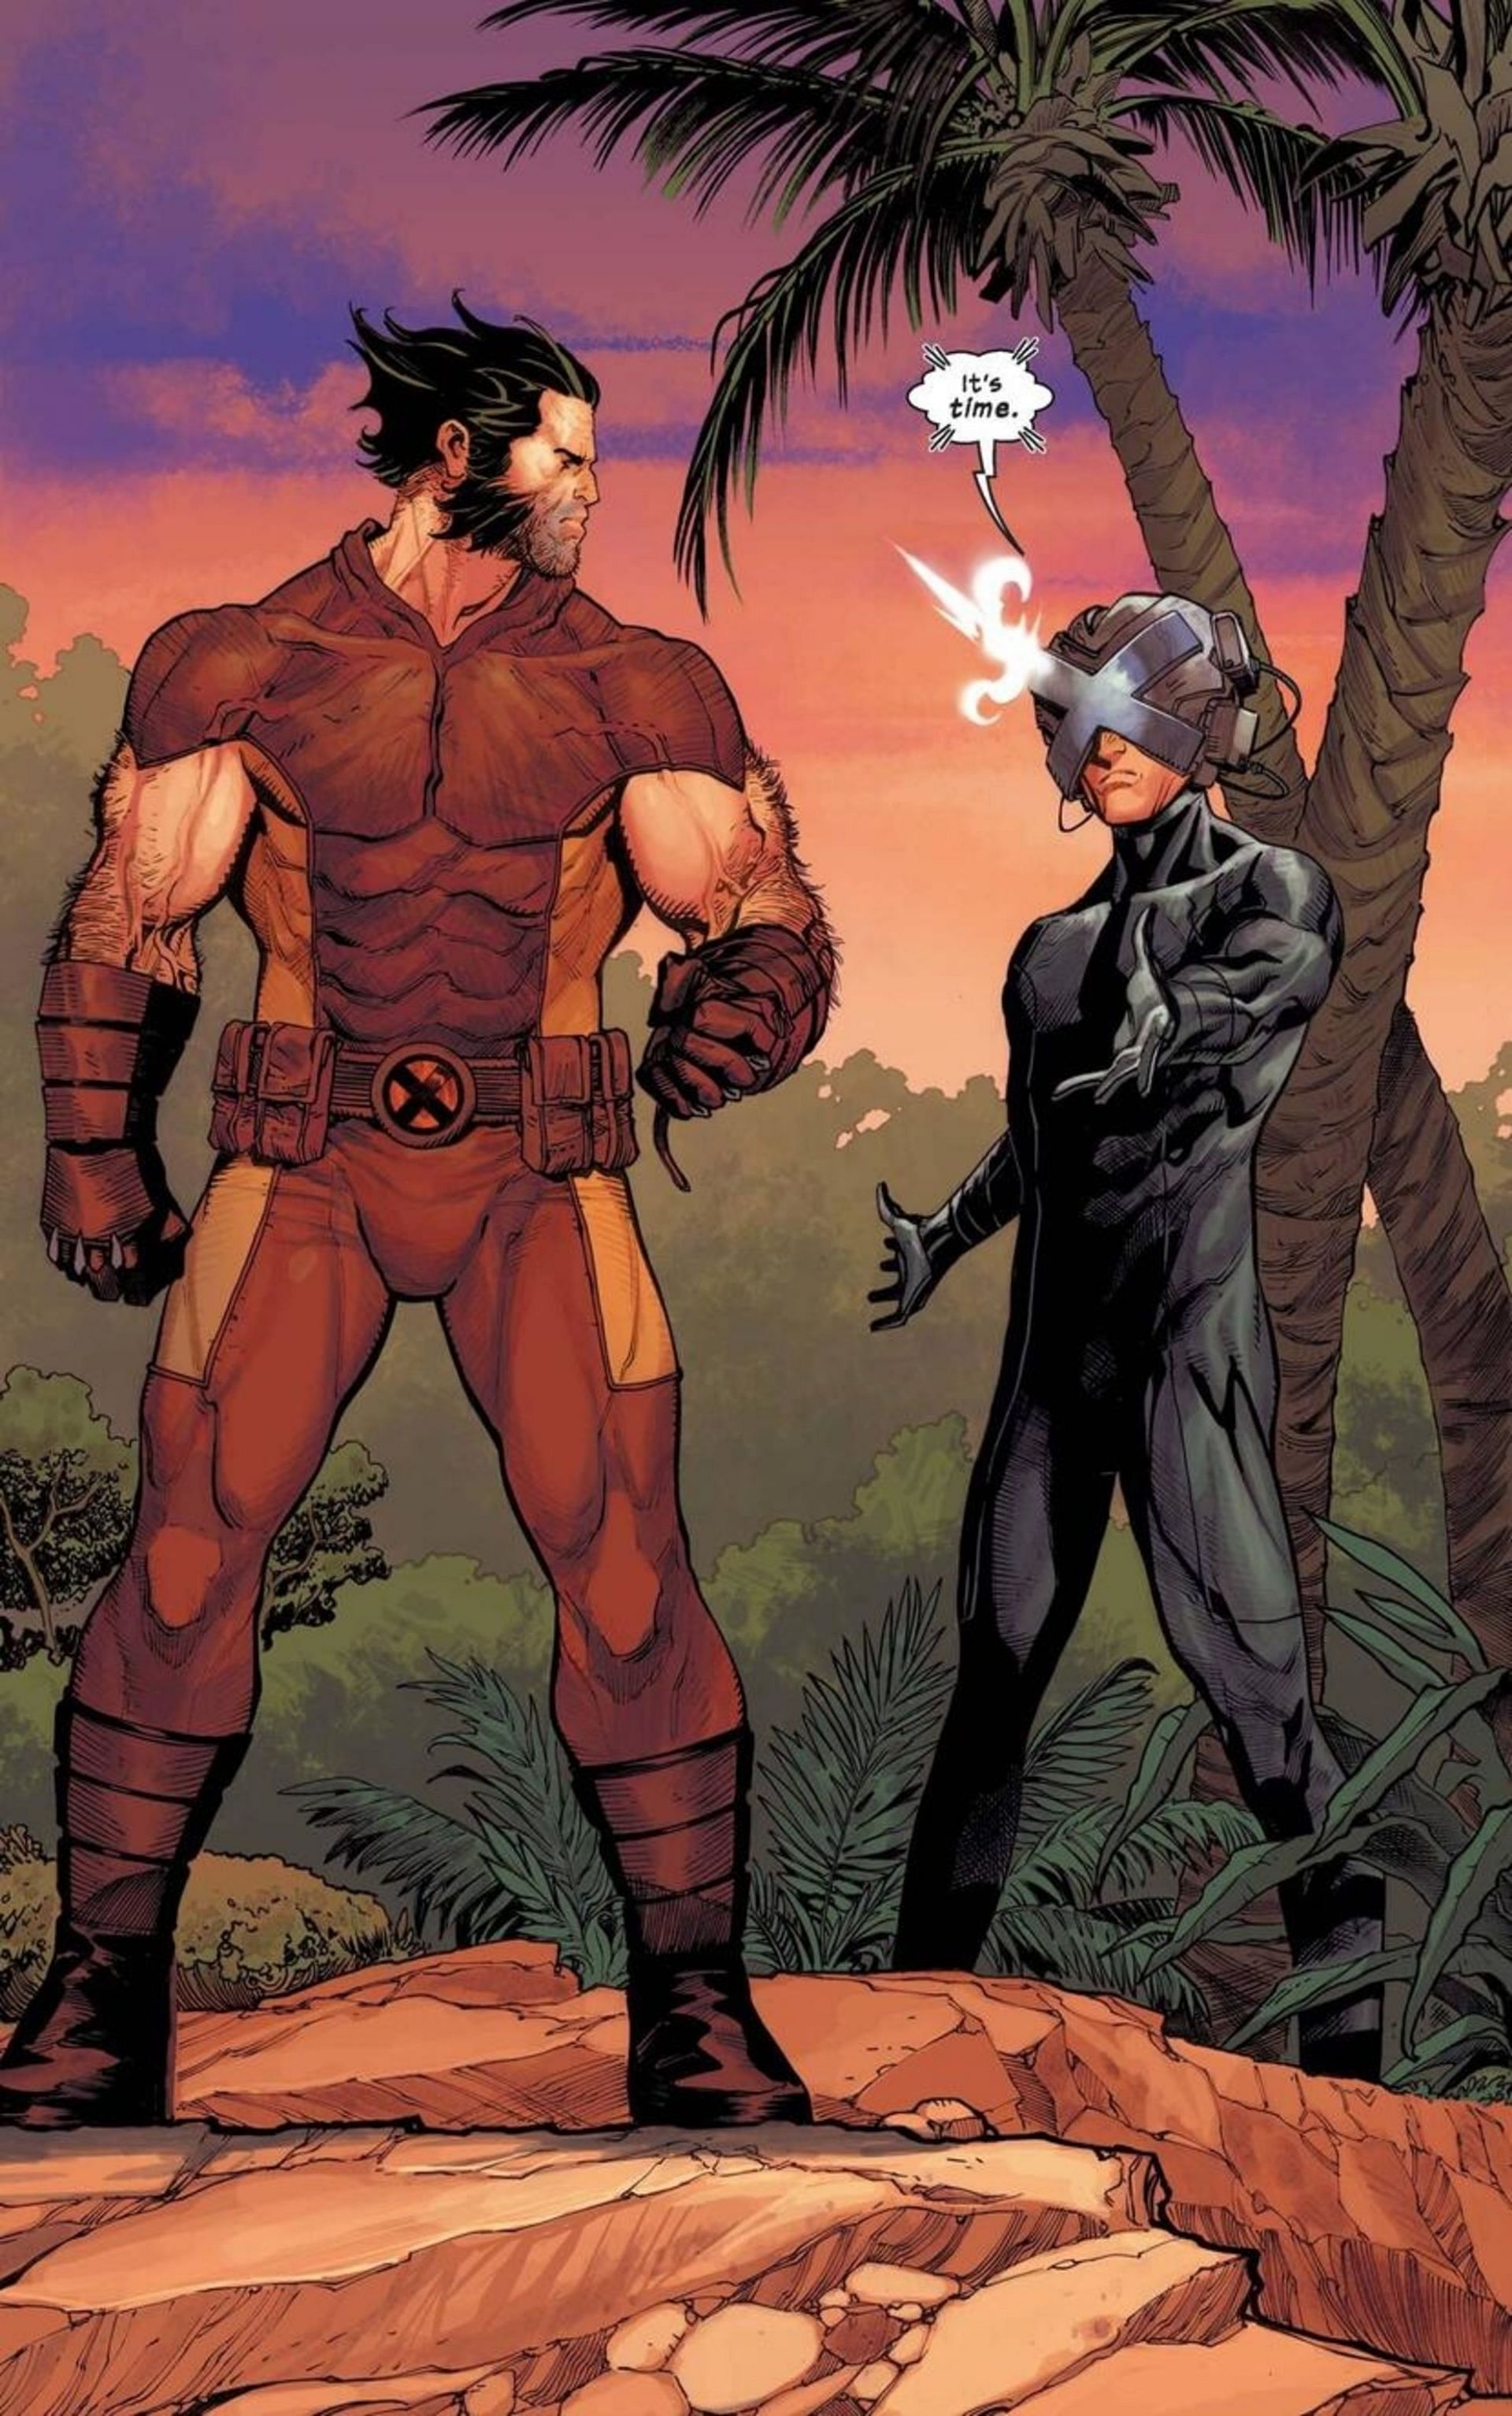 Logan in comics (Image via Marvel Comics)